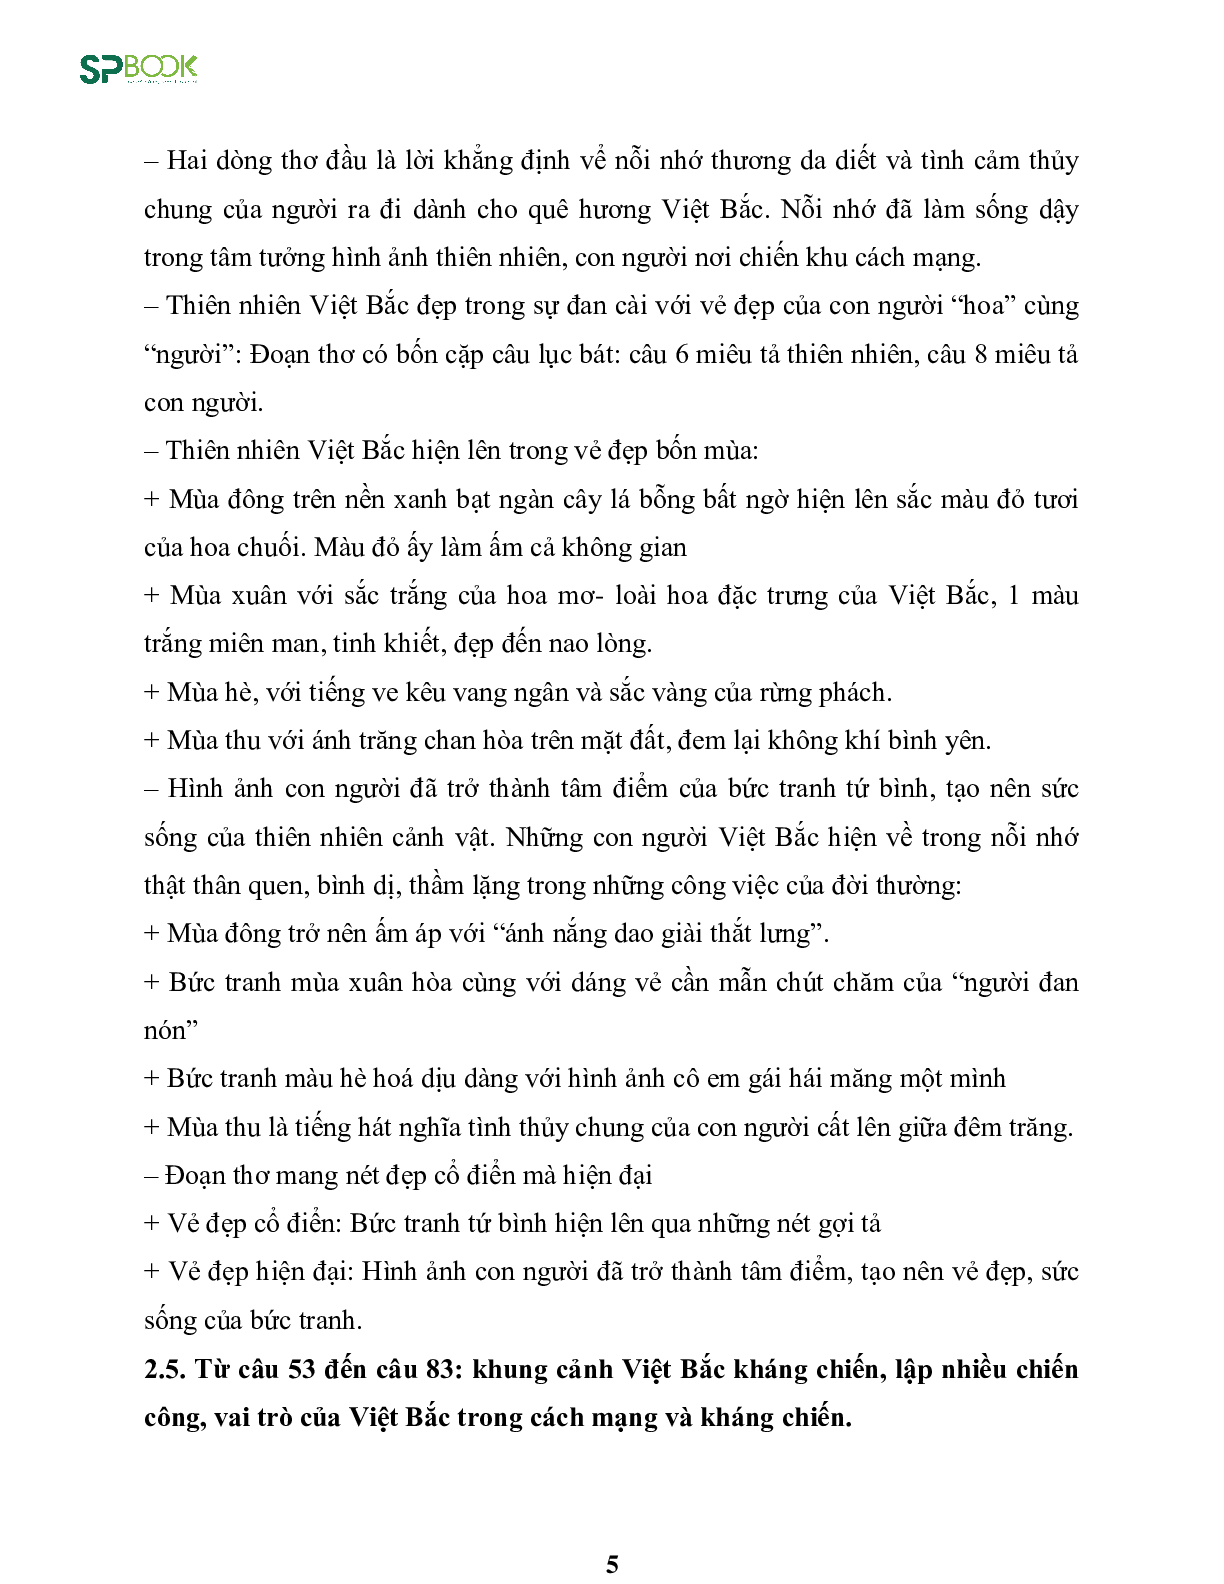 Kiến thức cơ bản và những dạng đề thi về bài Việt Bắc - Tố Hữu Văn 12 (trang 5)